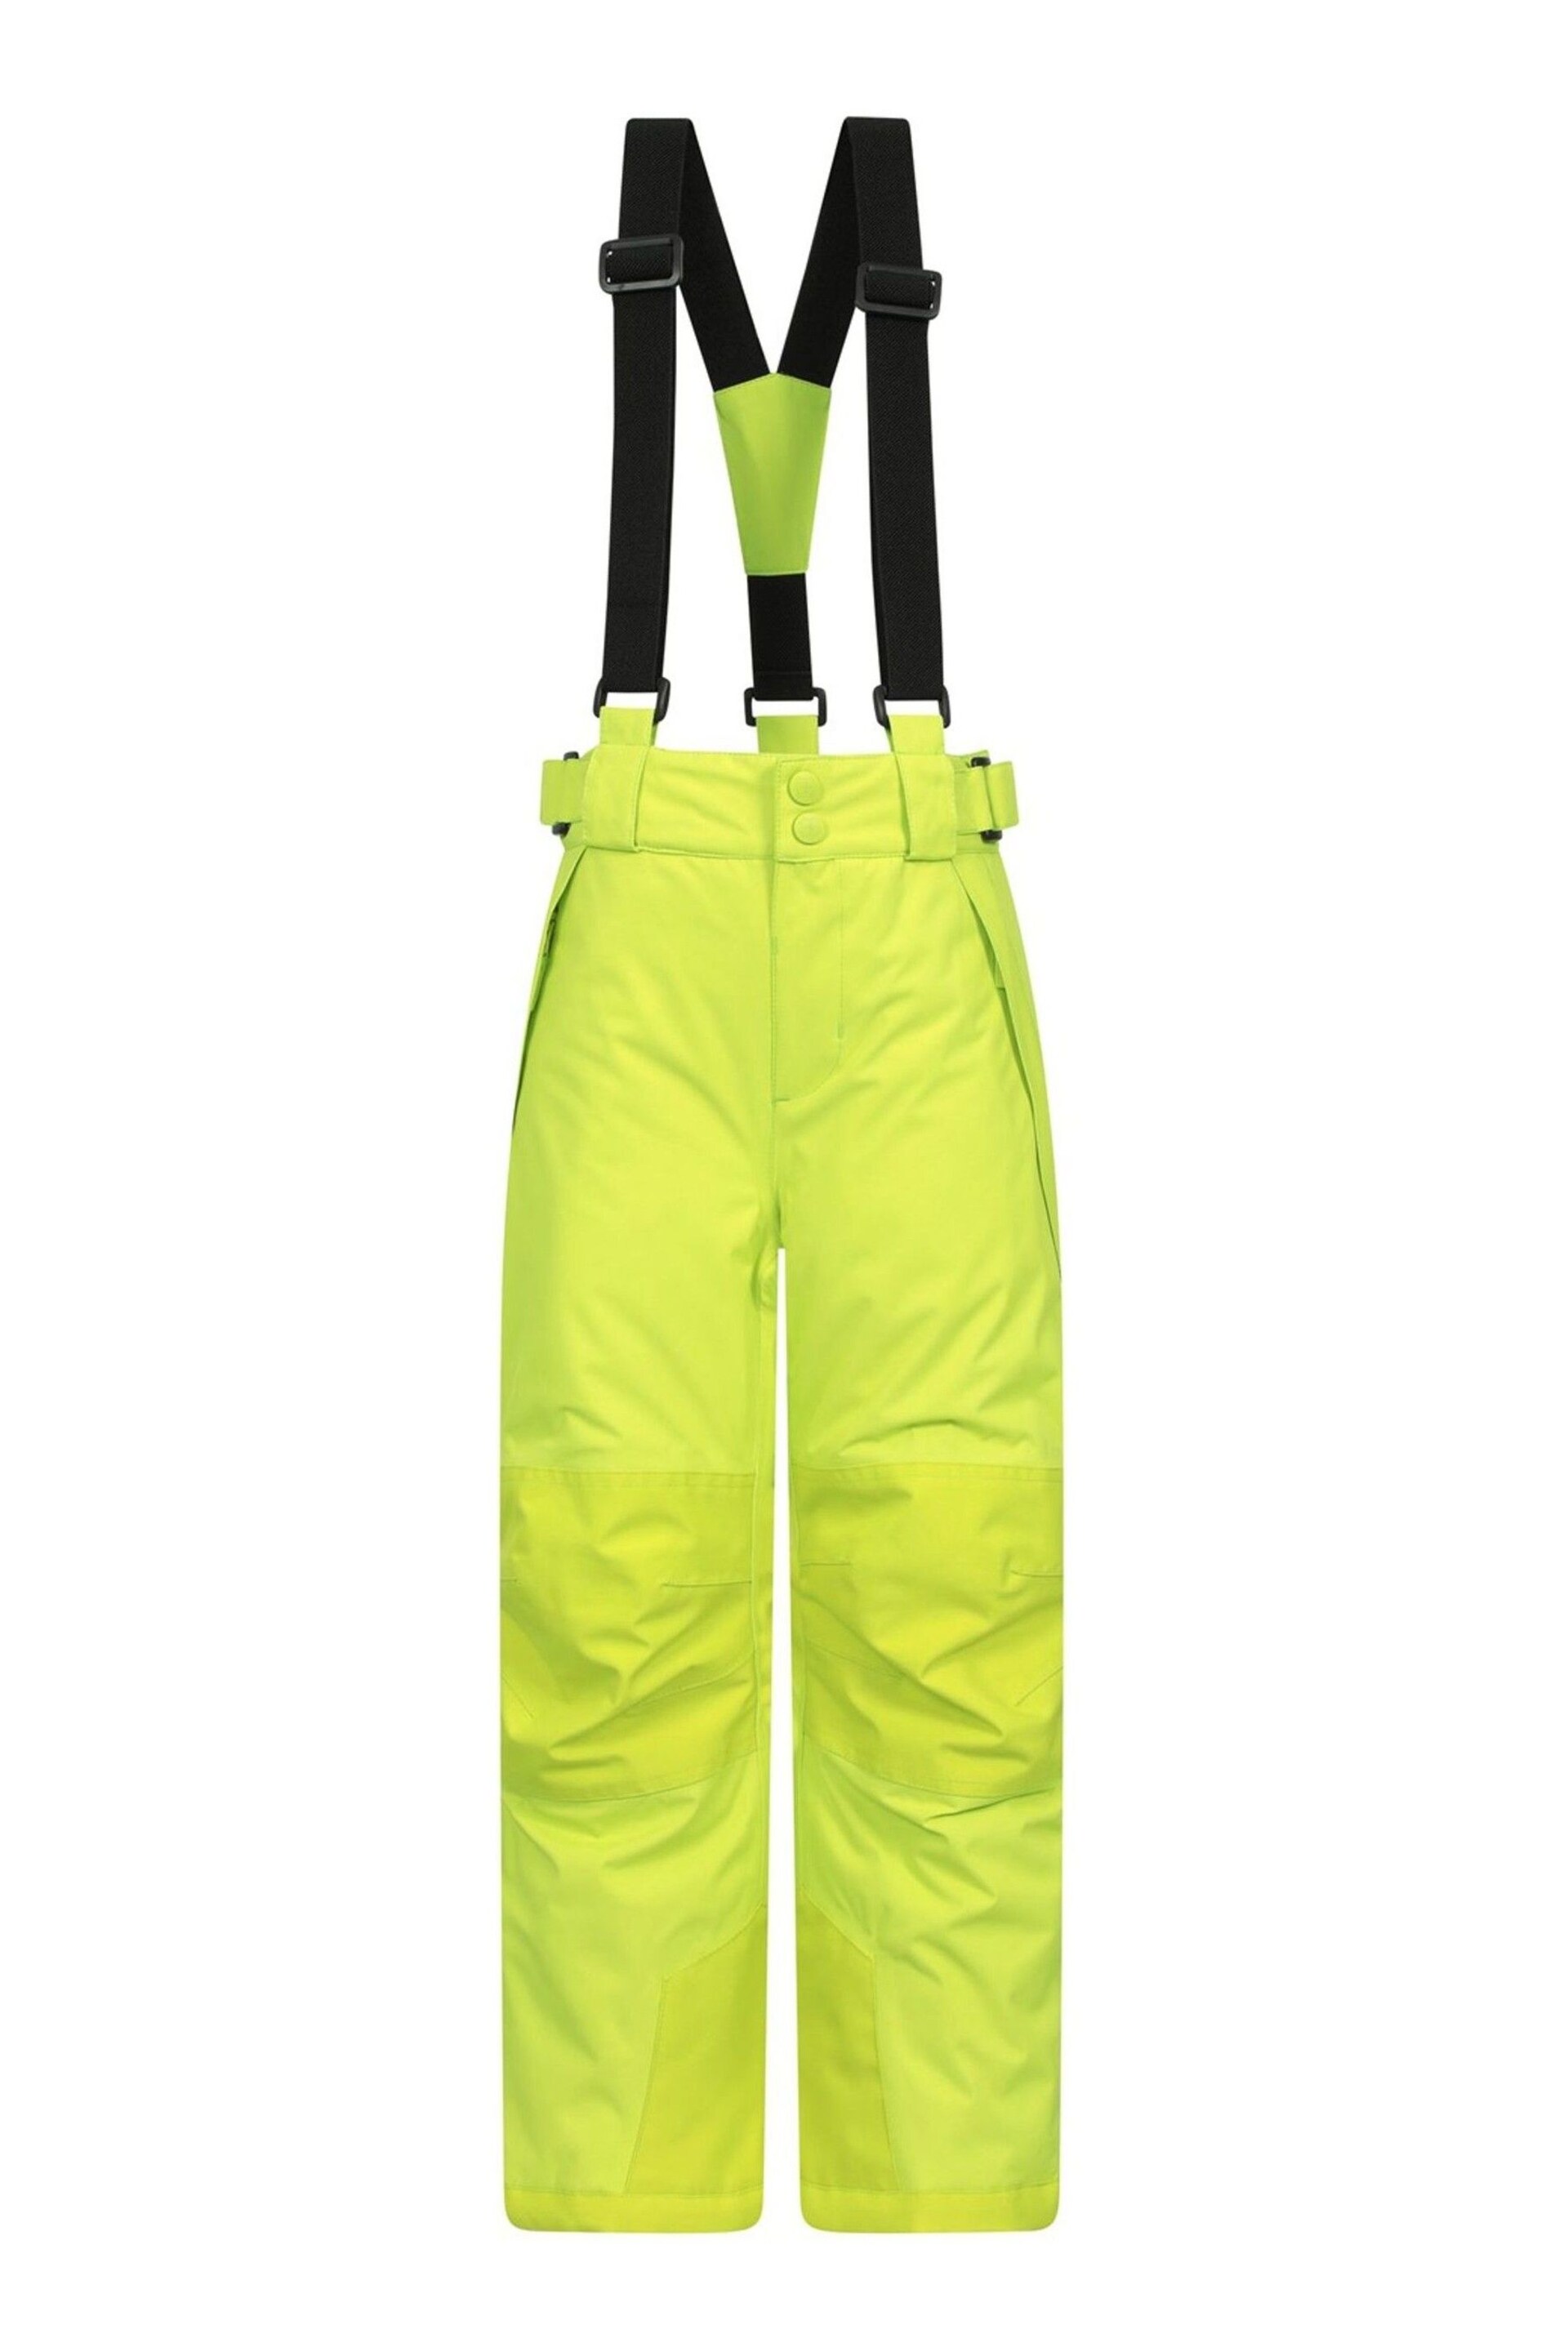 Mountain Warehouse Lime Falcon Extreme Kids Ski Trouser - Image 1 of 7